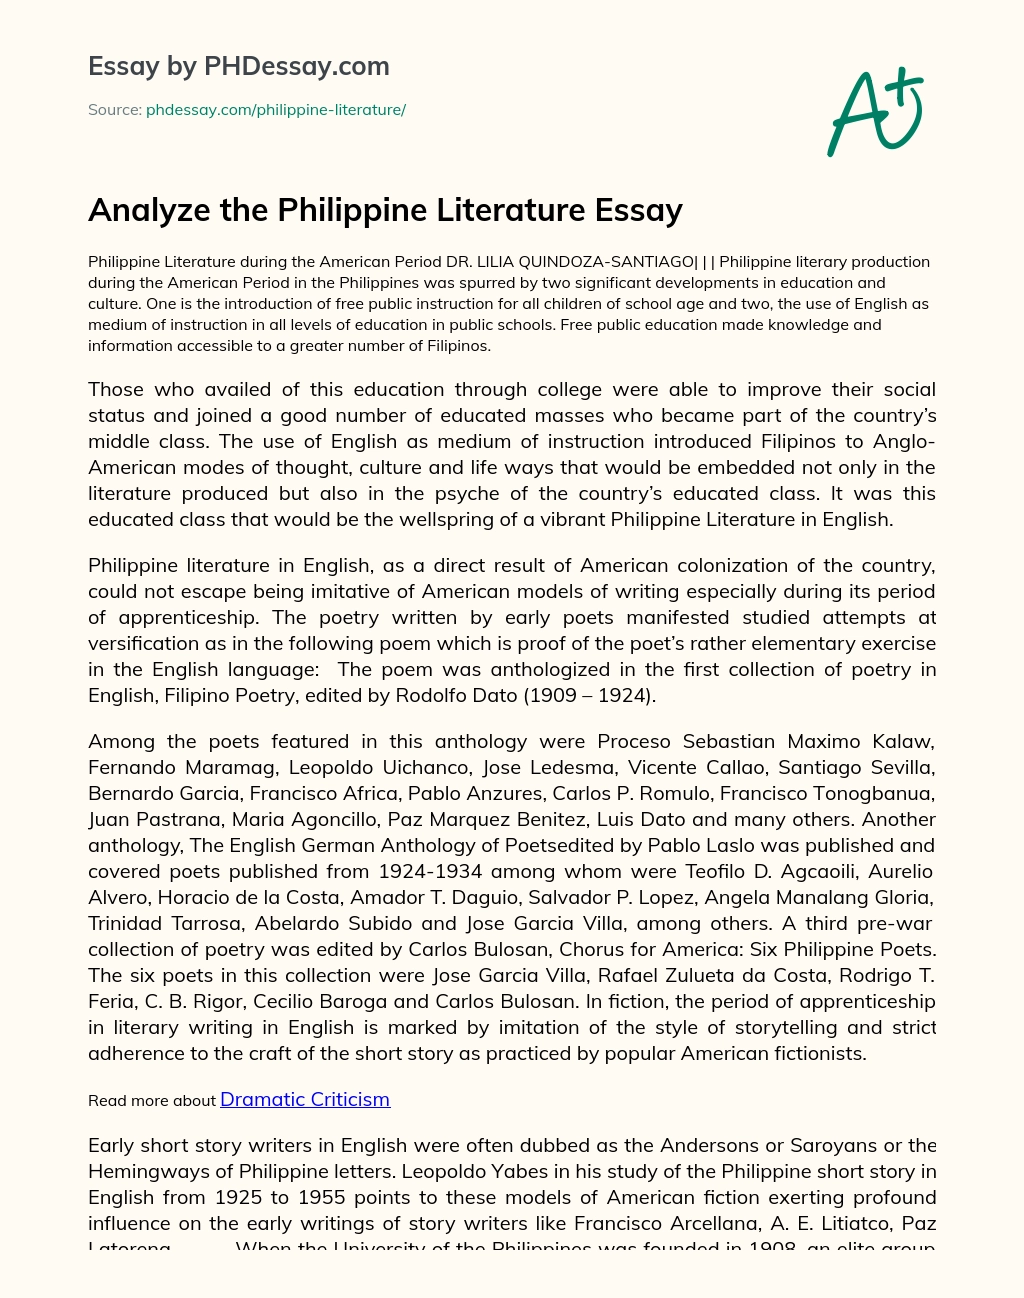 Analyze the Philippine Literature Essay essay